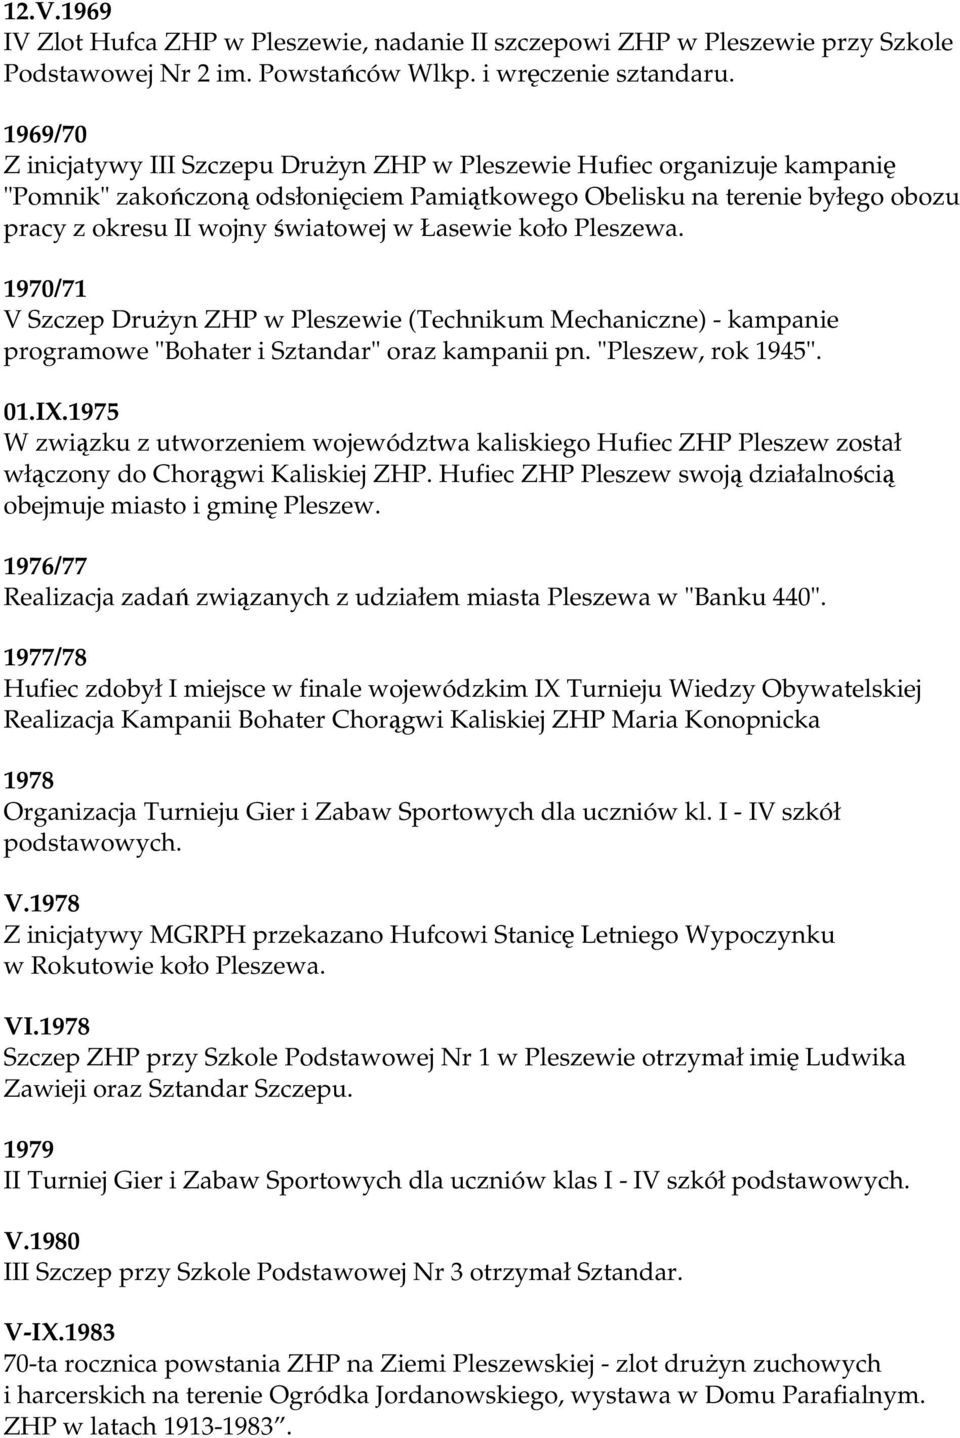 Łasewie koło Pleszewa. 1970/71 V Szczep DruŜyn ZHP w Pleszewie (Technikum Mechaniczne) - kampanie programowe "Bohater i Sztandar" oraz kampanii pn. "Pleszew, rok 1945". 01.IX.